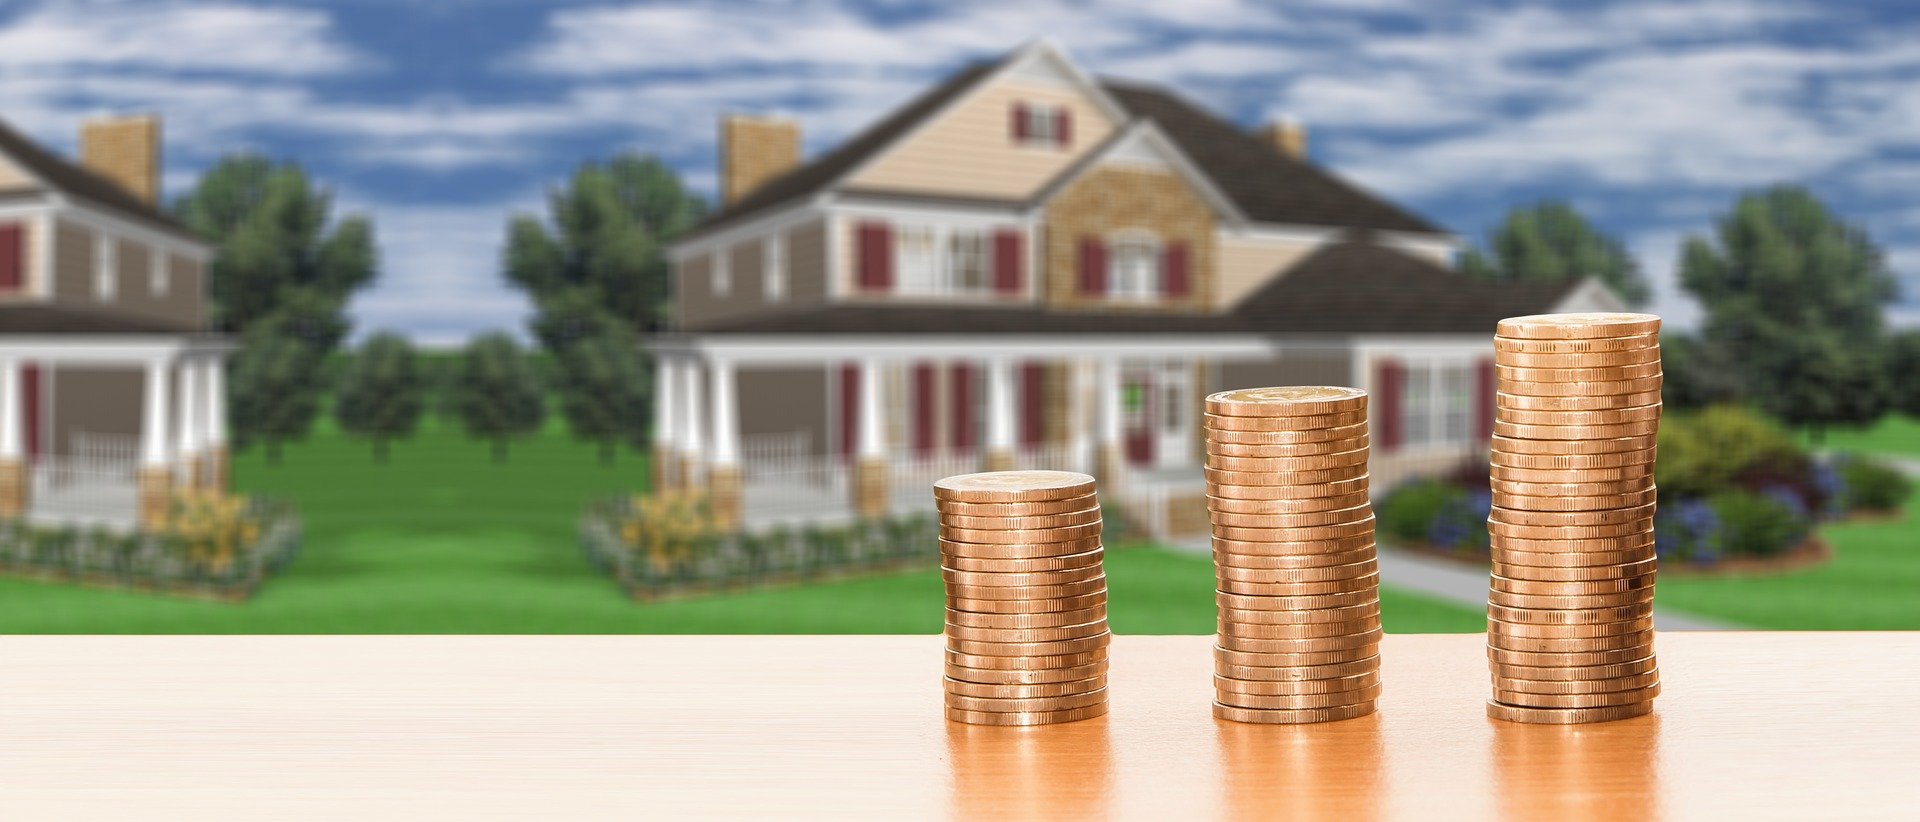 Wer mehrere Immobilien besitzt, sollte sich einen spezialisierten Steuerberater für den Immobilienbereich suchen